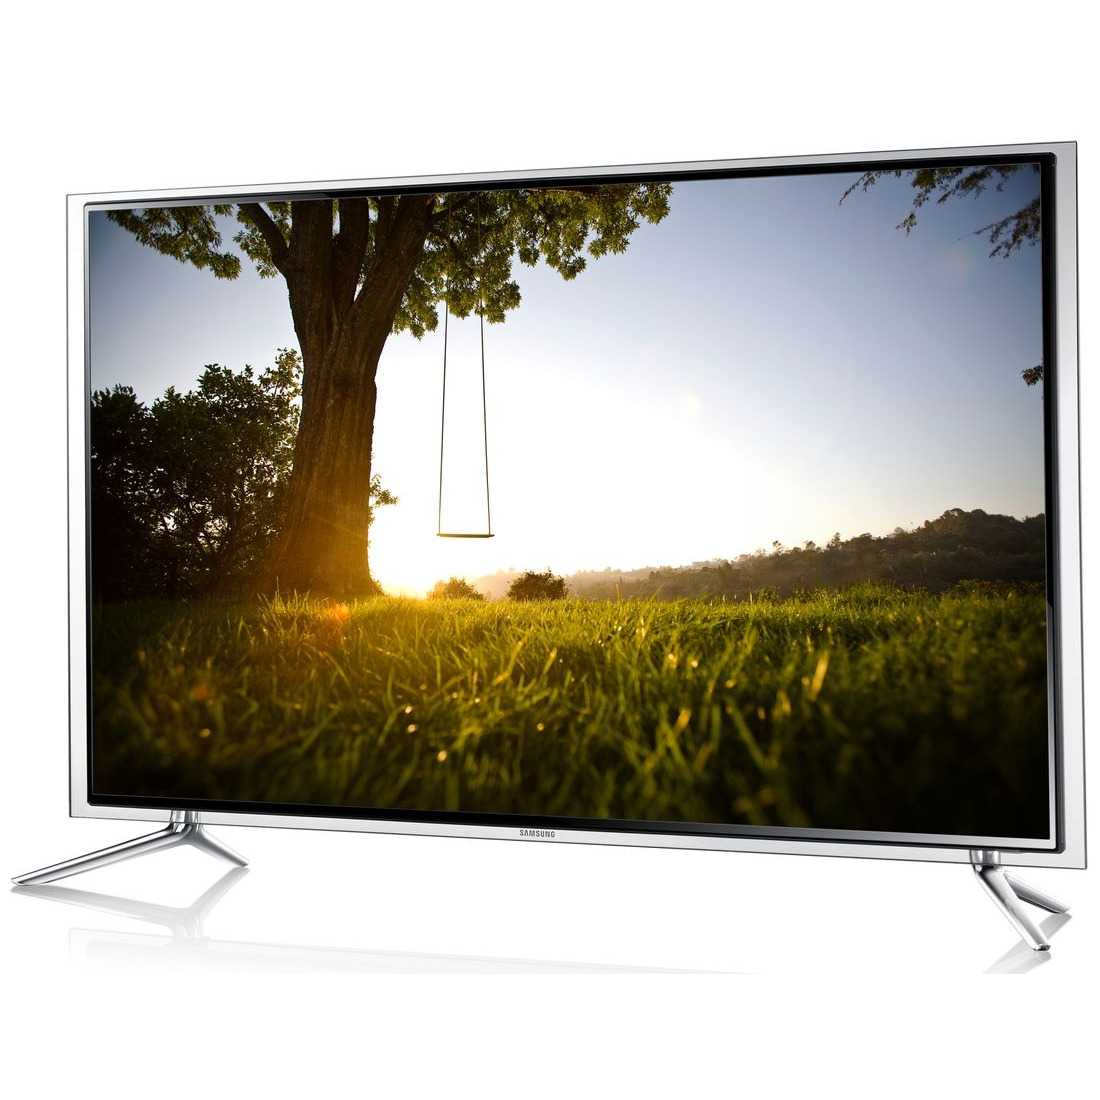 Телевизор Samsung UE40F6200 - подробные характеристики обзоры видео фото Цены в интернет-магазинах где можно купить телевизор Samsung UE40F6200